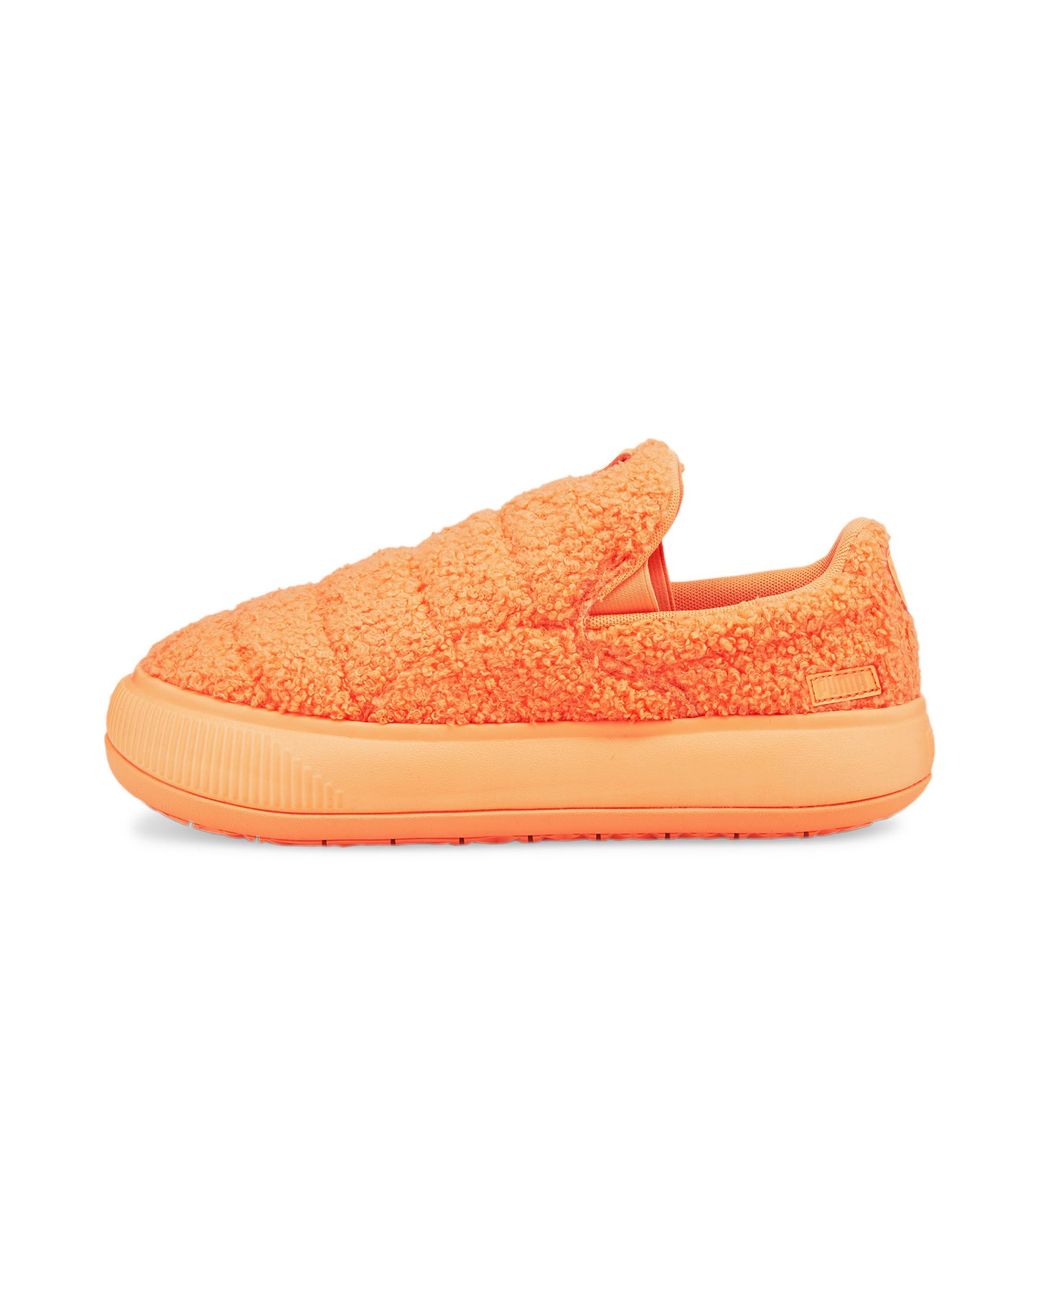 PUMA Suede Mayu Slip-on Teddy Shoes in Orange | Lyst